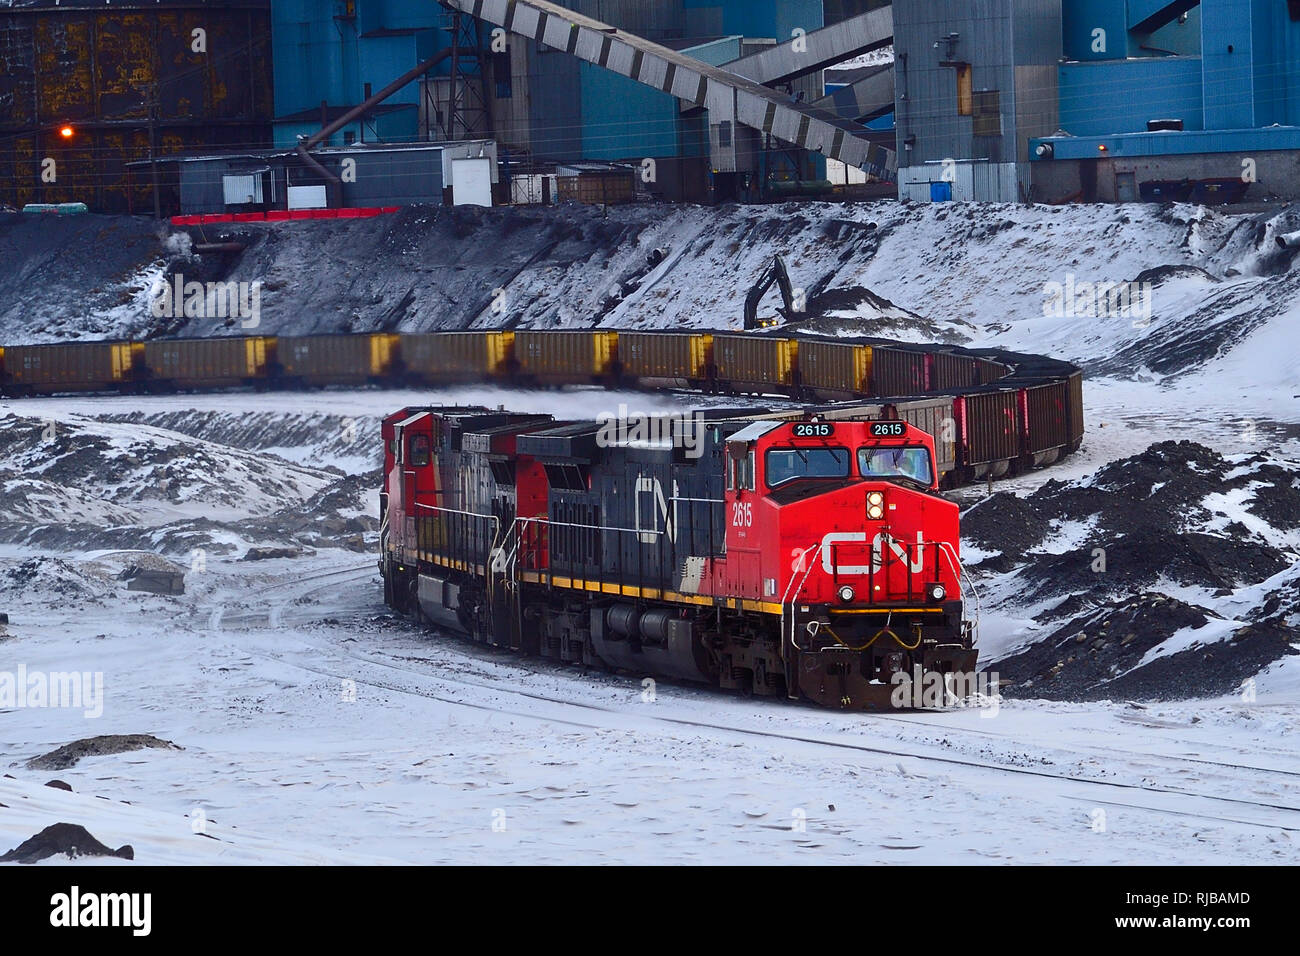 Un train de marchandises des chemins de fer nationaux du Canada à un chargement de charbon usine de traitement du charbon dans les régions rurales de l'Alberta Canada Banque D'Images